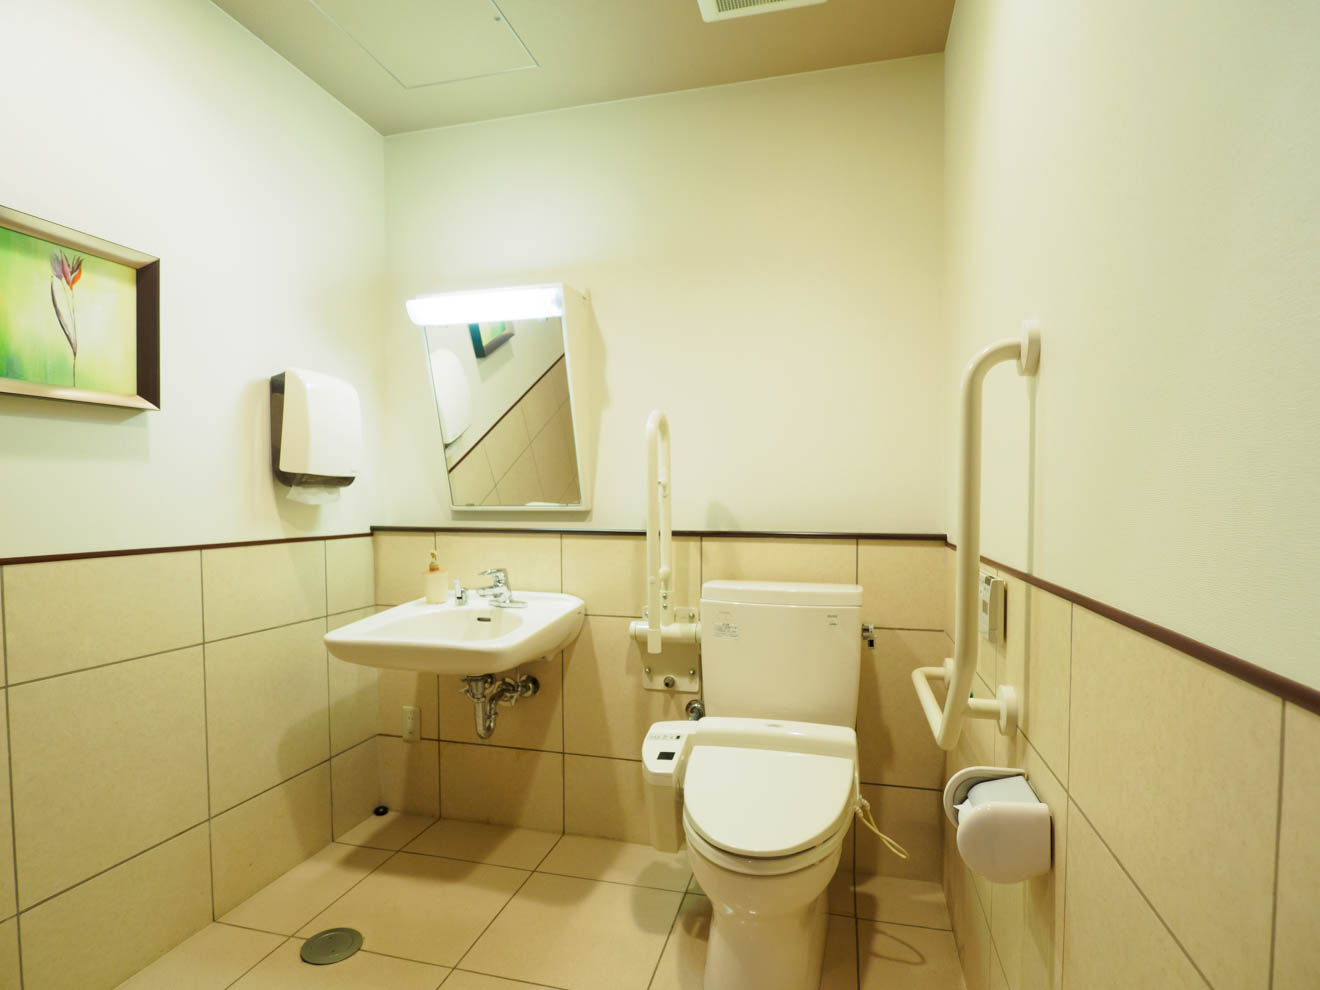 ■１階パブリックトイレ■バリアフリーに対応（段差なしの広い入口、手すり・呼出ベル設置、低めの洗面台）